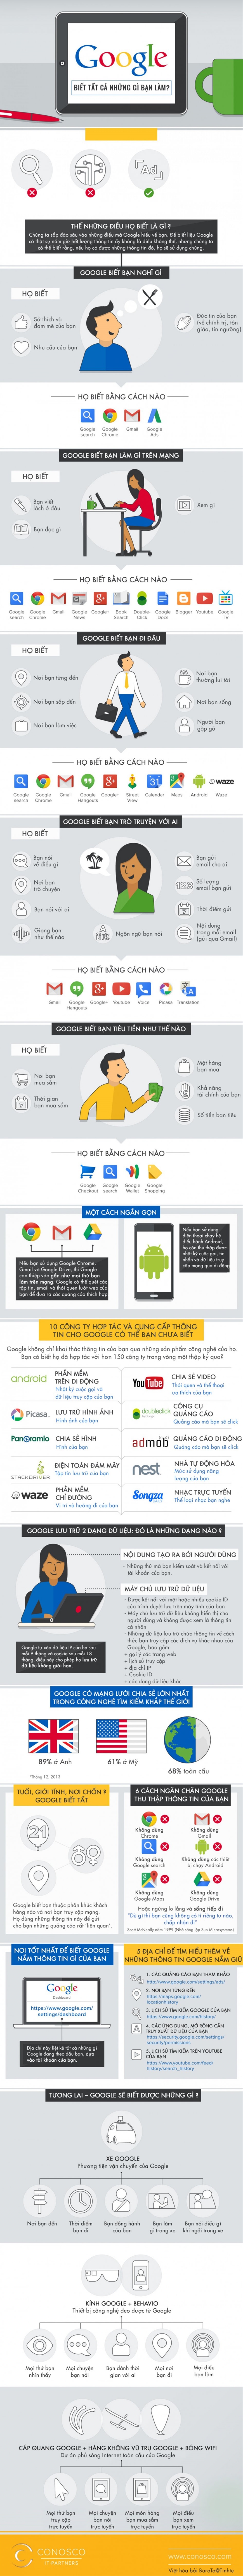 [Infographic] Google biết tất cả những việc bạn làm trên Internet